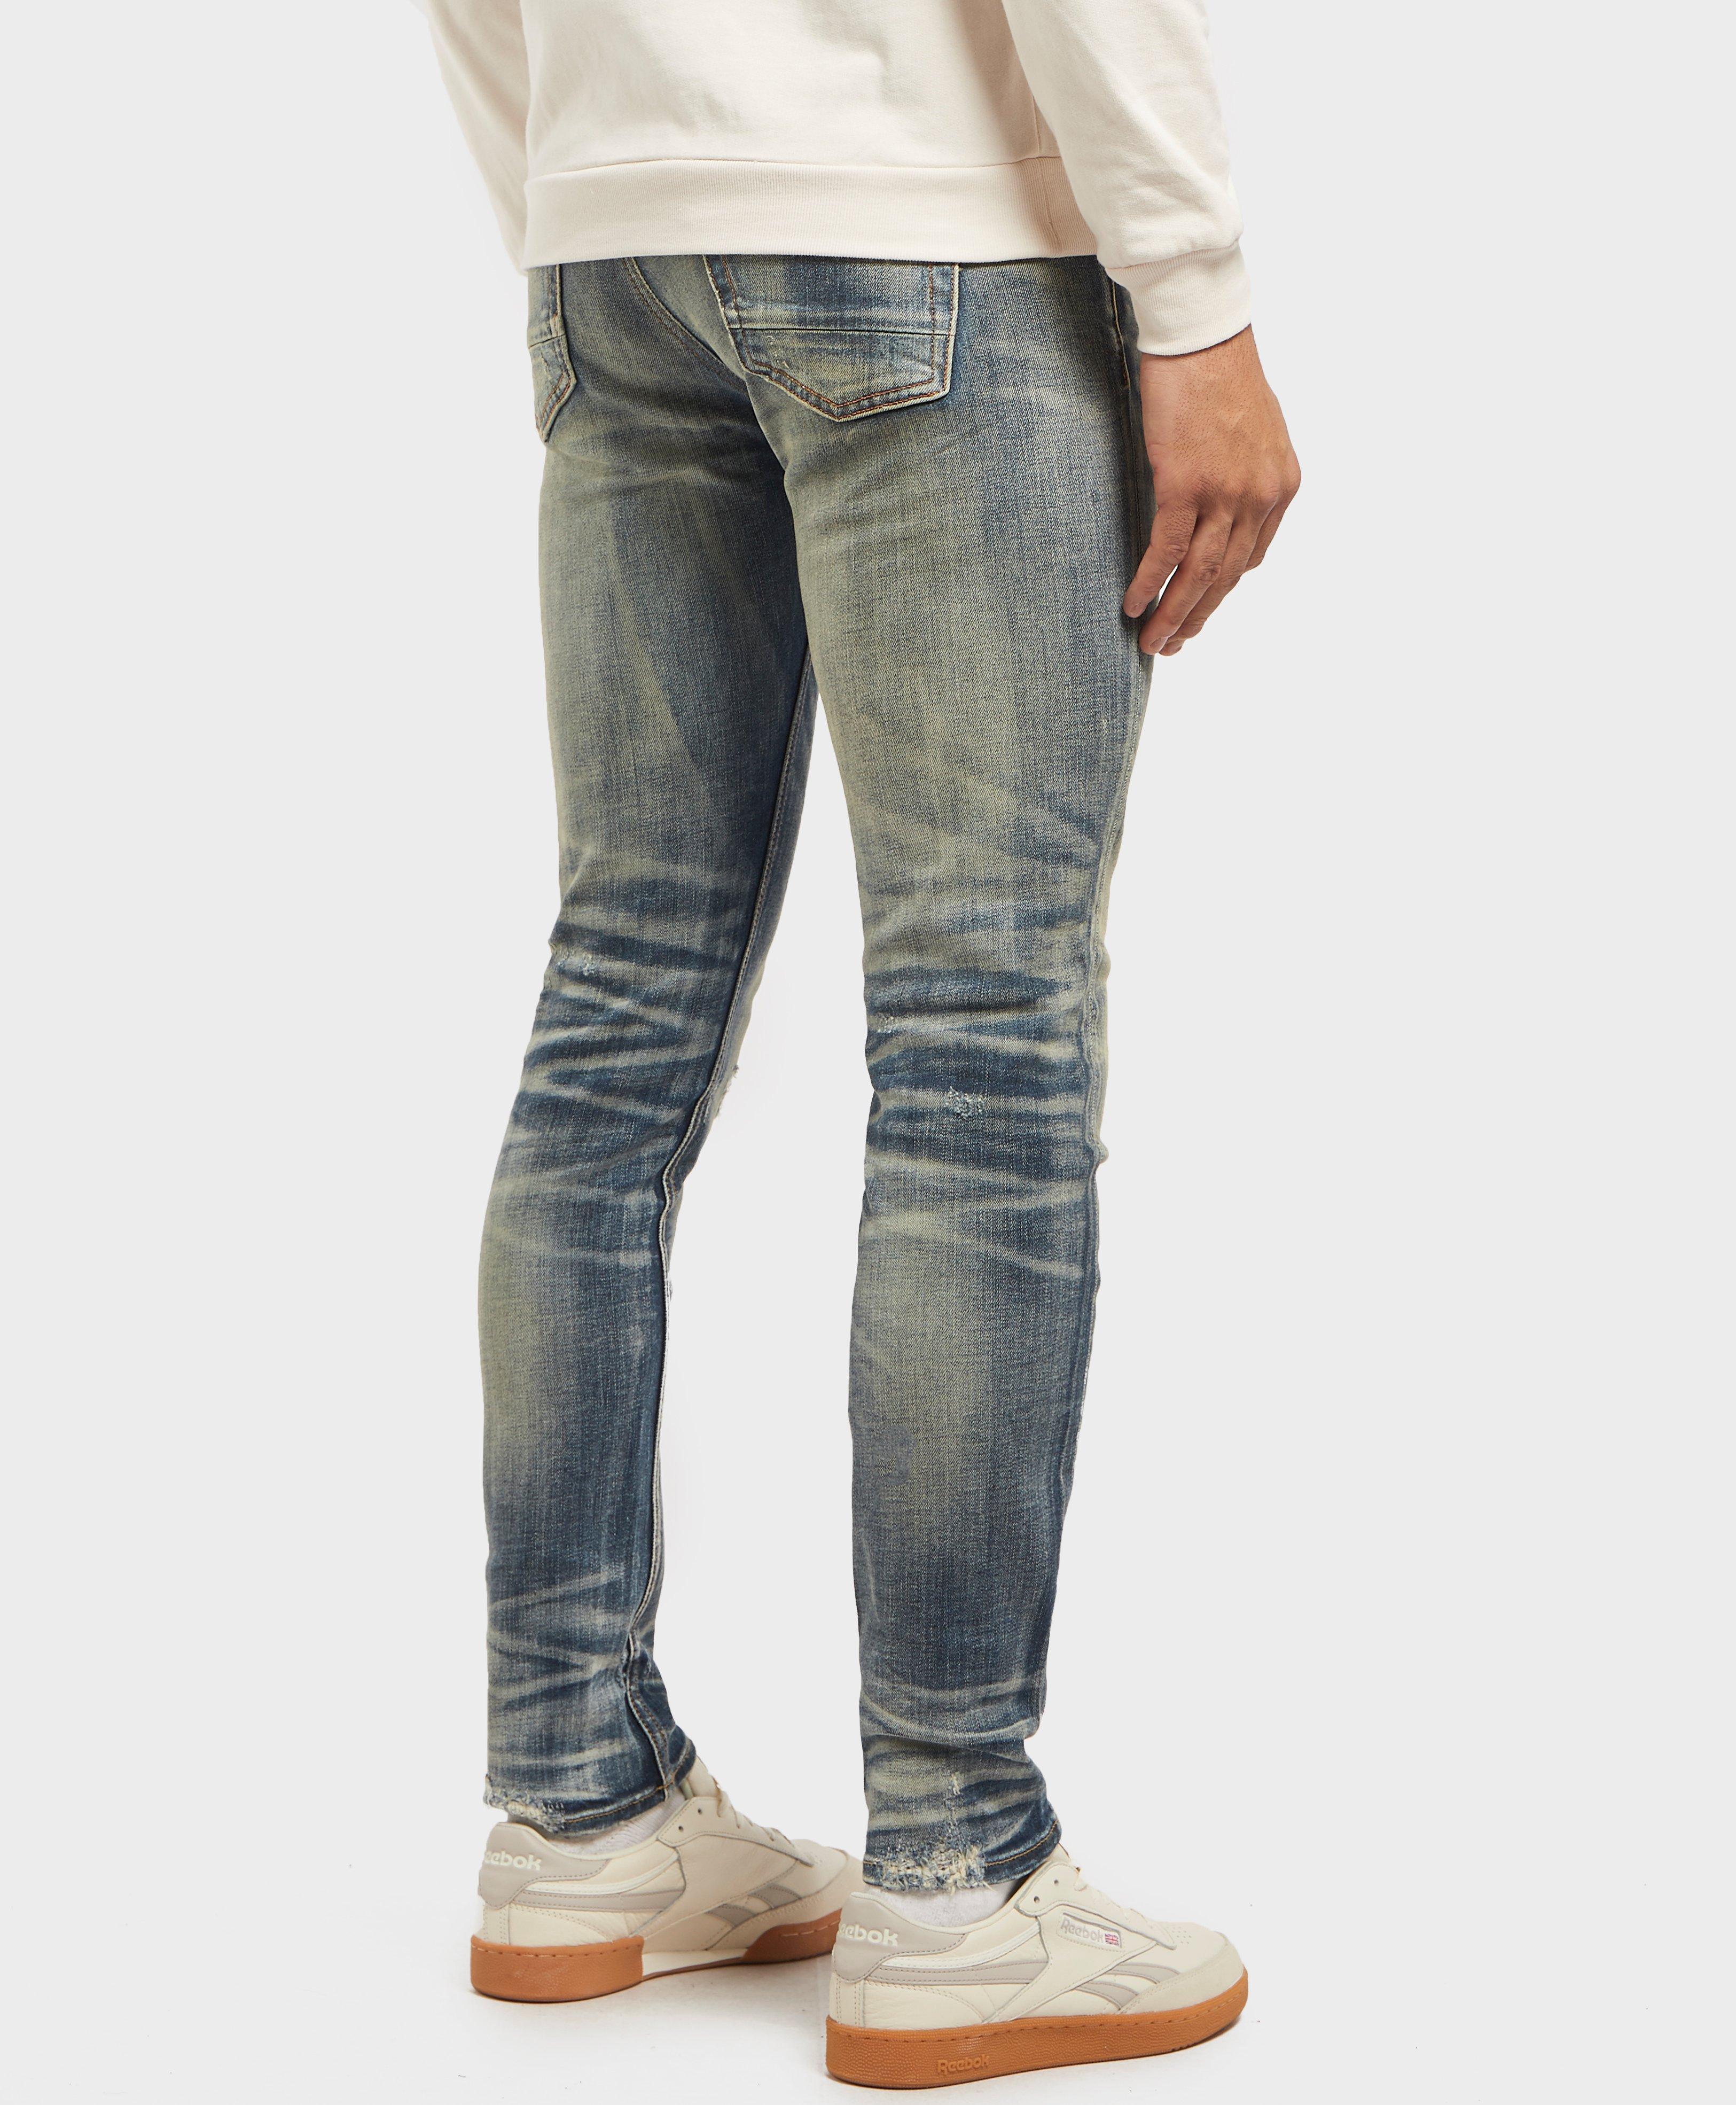 Denham Denim Bolt Skinny Jeans in Blue for Men - Lyst